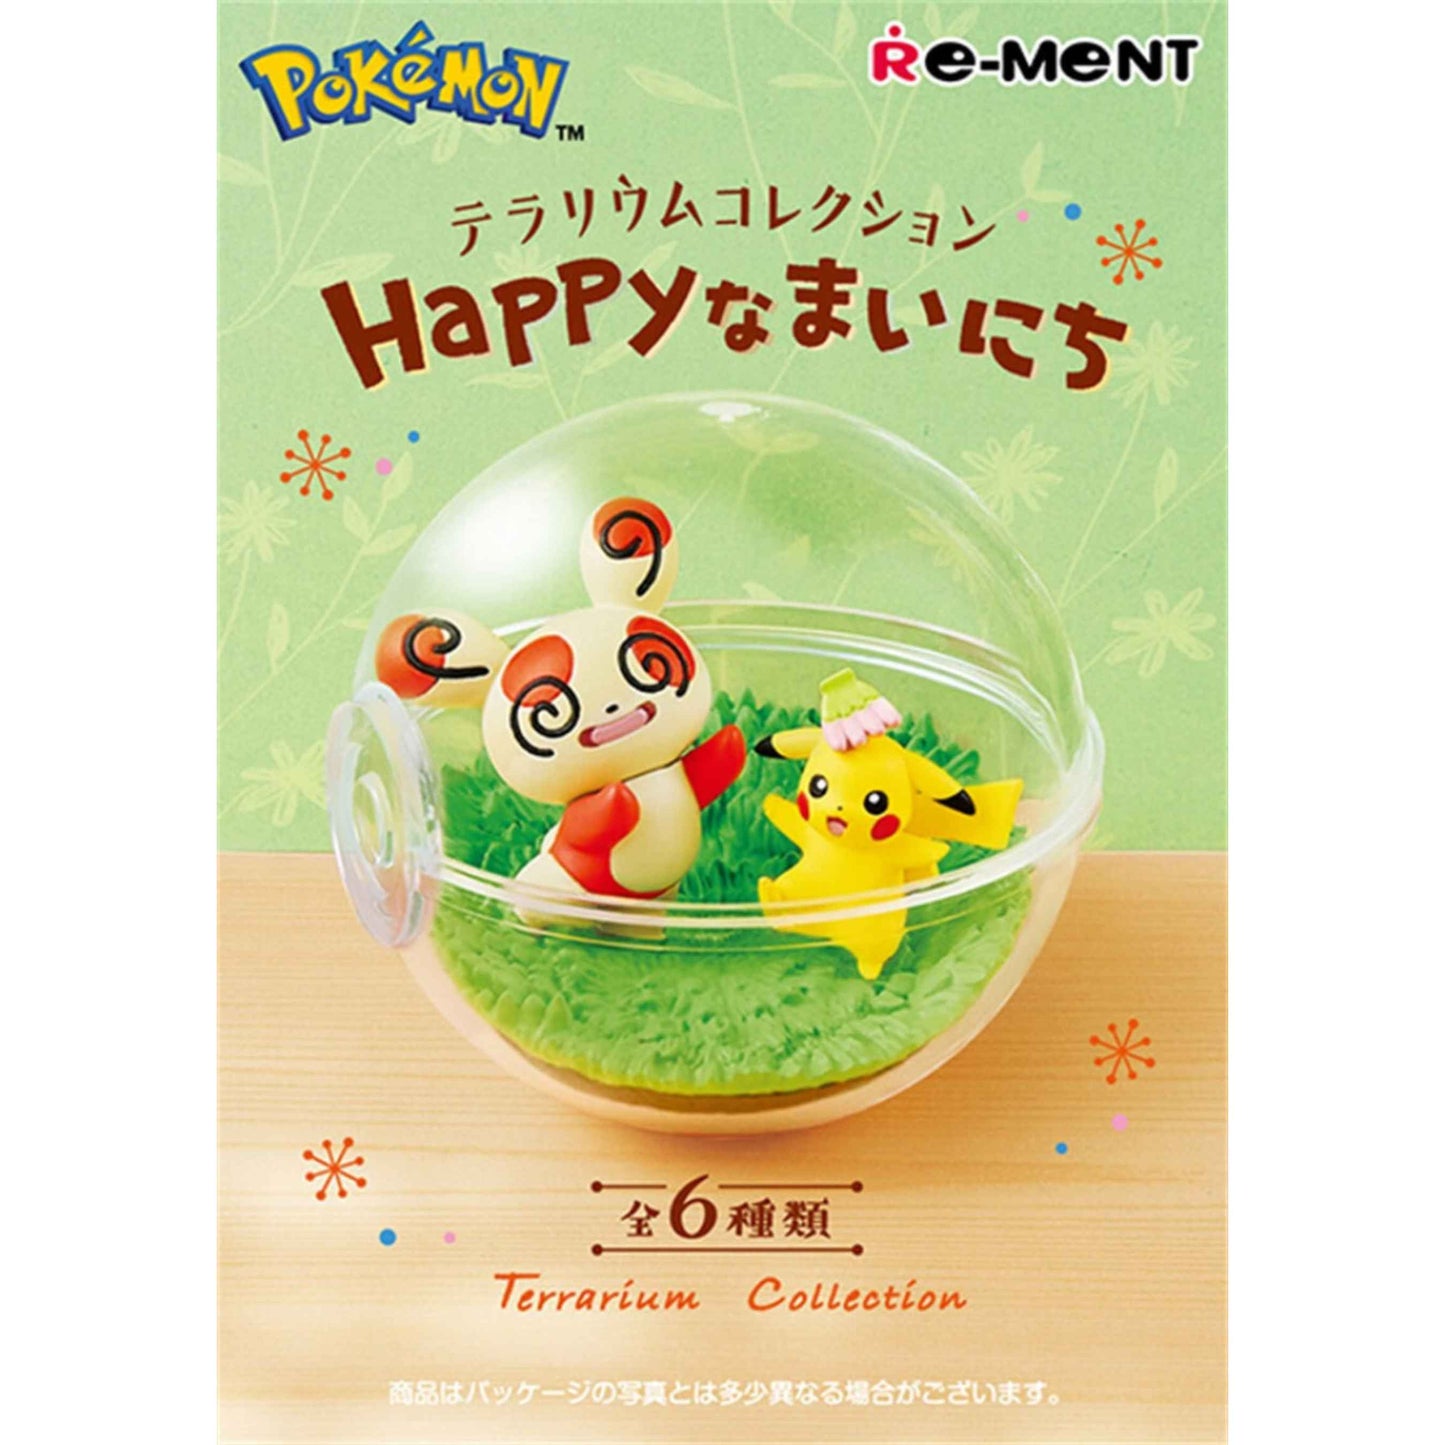 Re-ment: Pokémon Terrarium Collection Happy Time Series Blind Box - Whole Set of 6